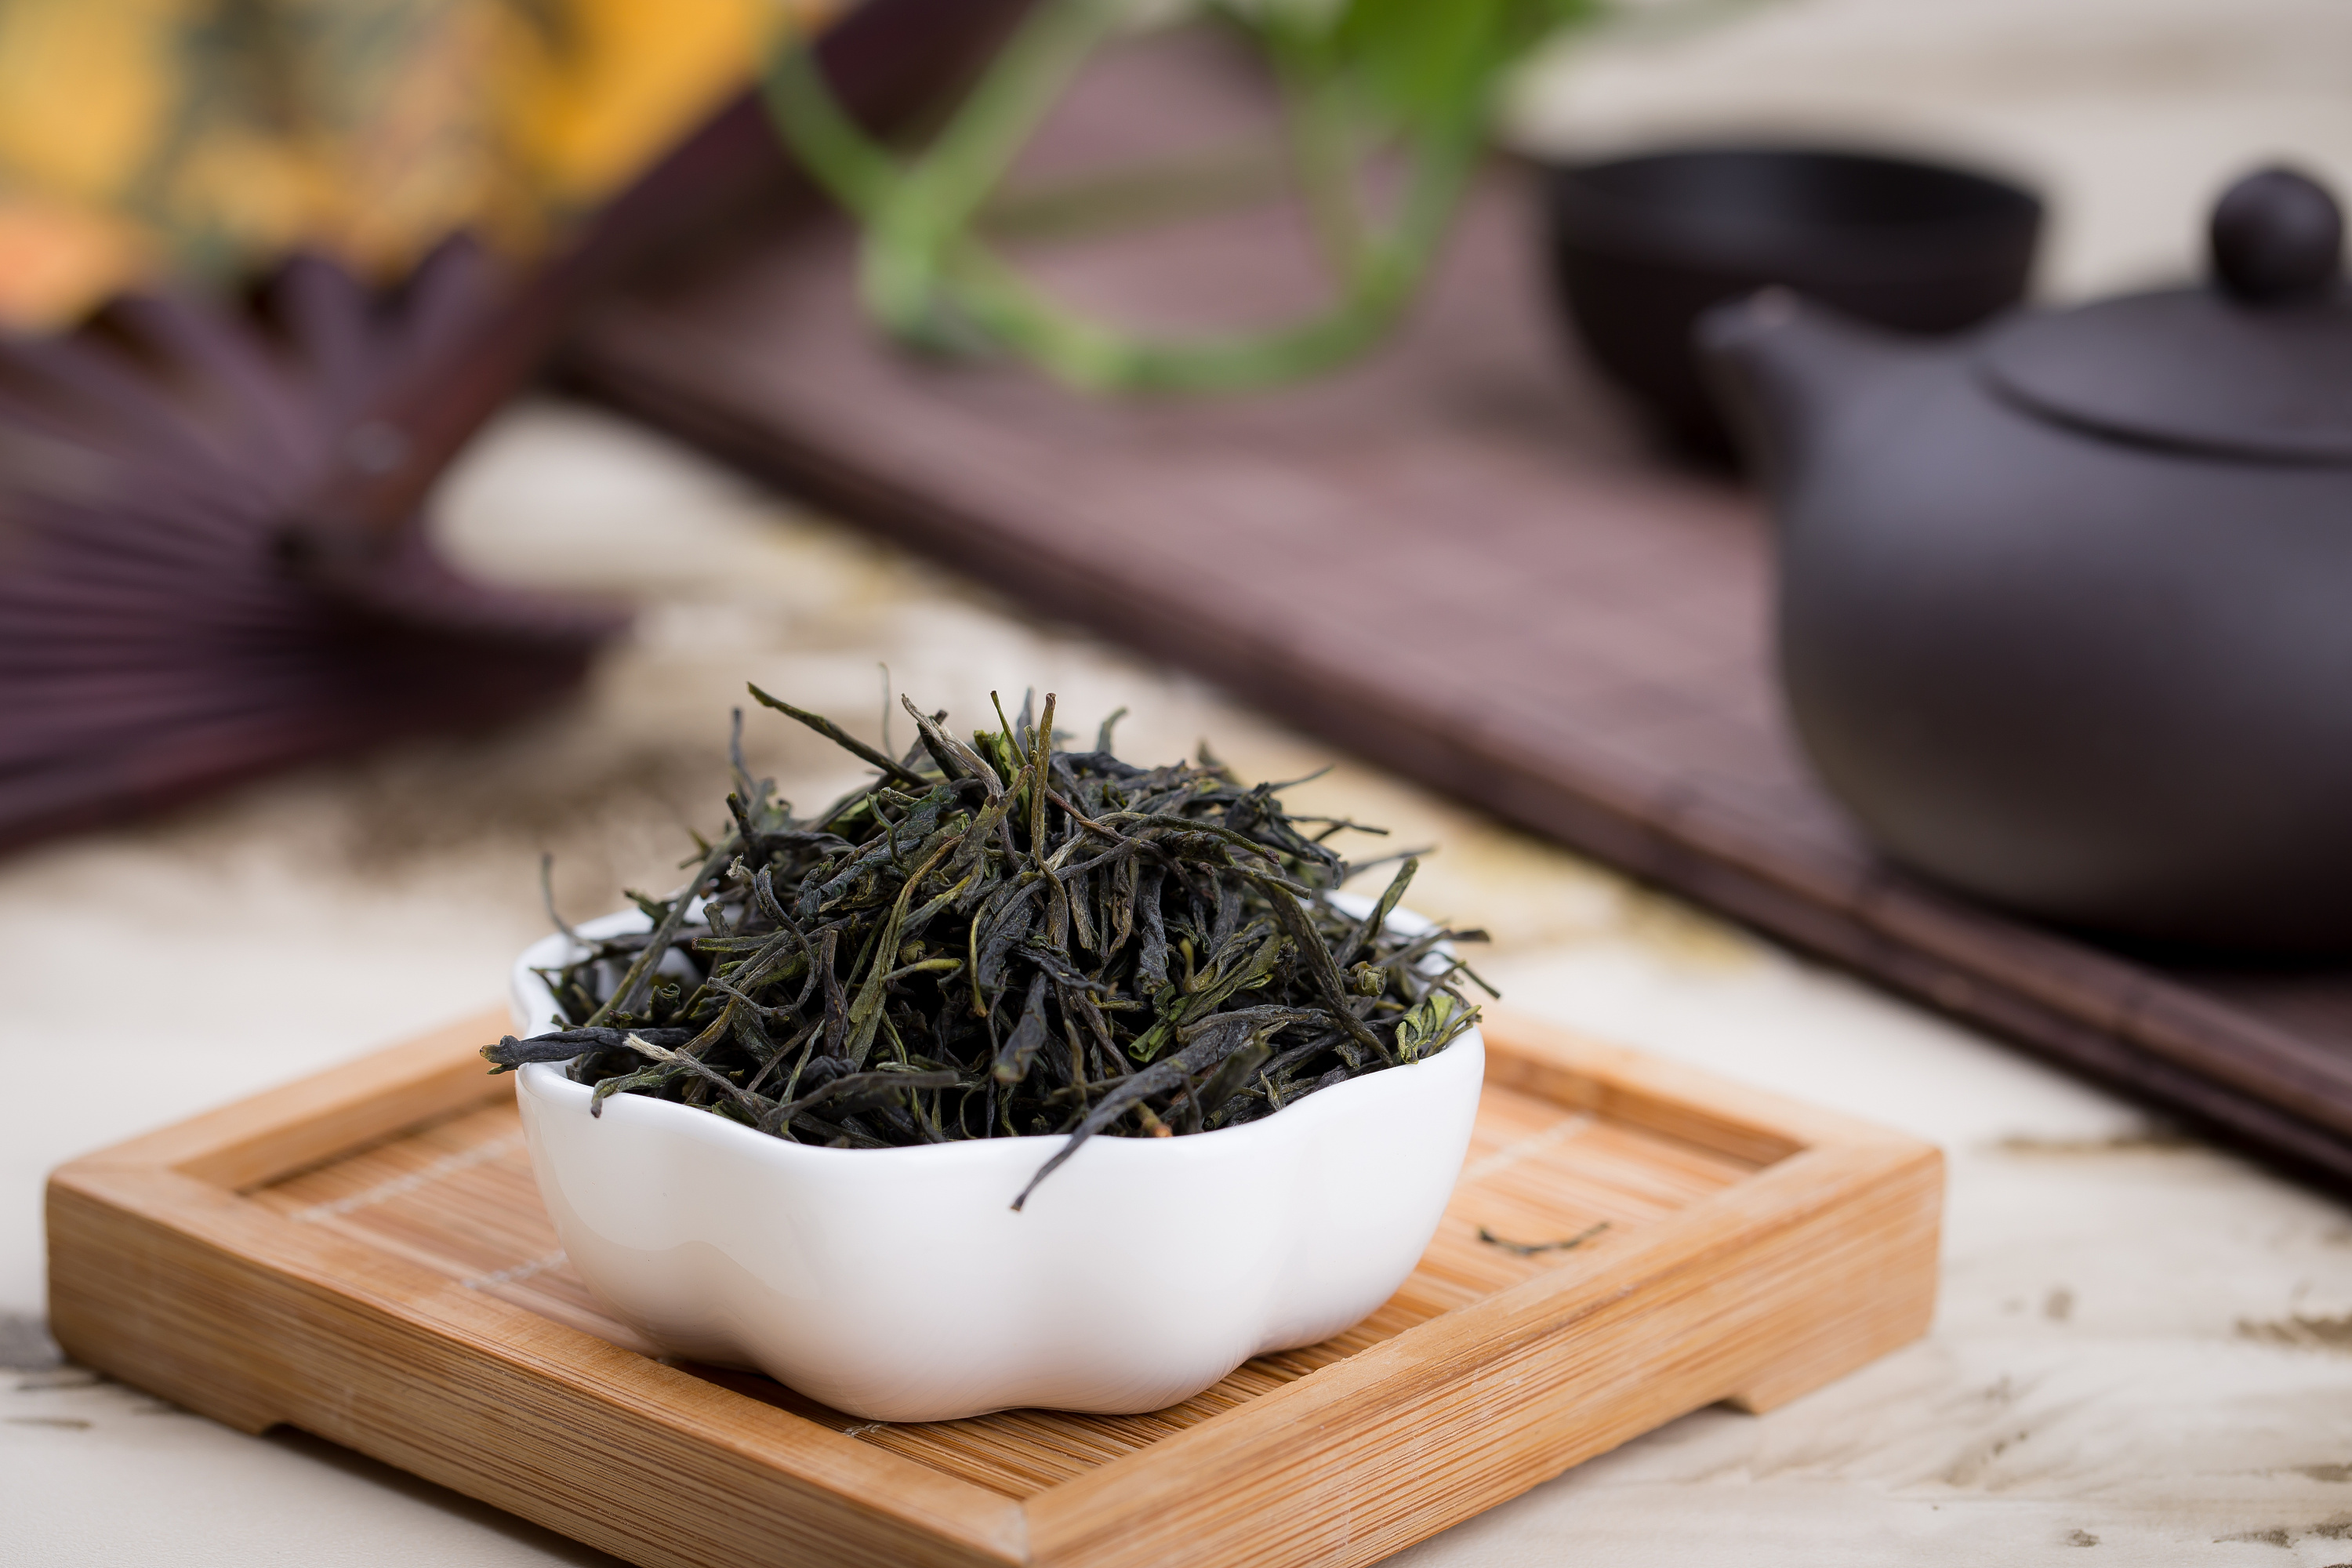  咀嚼干茶叶有什么好处 干茶叶可以长期嚼吗